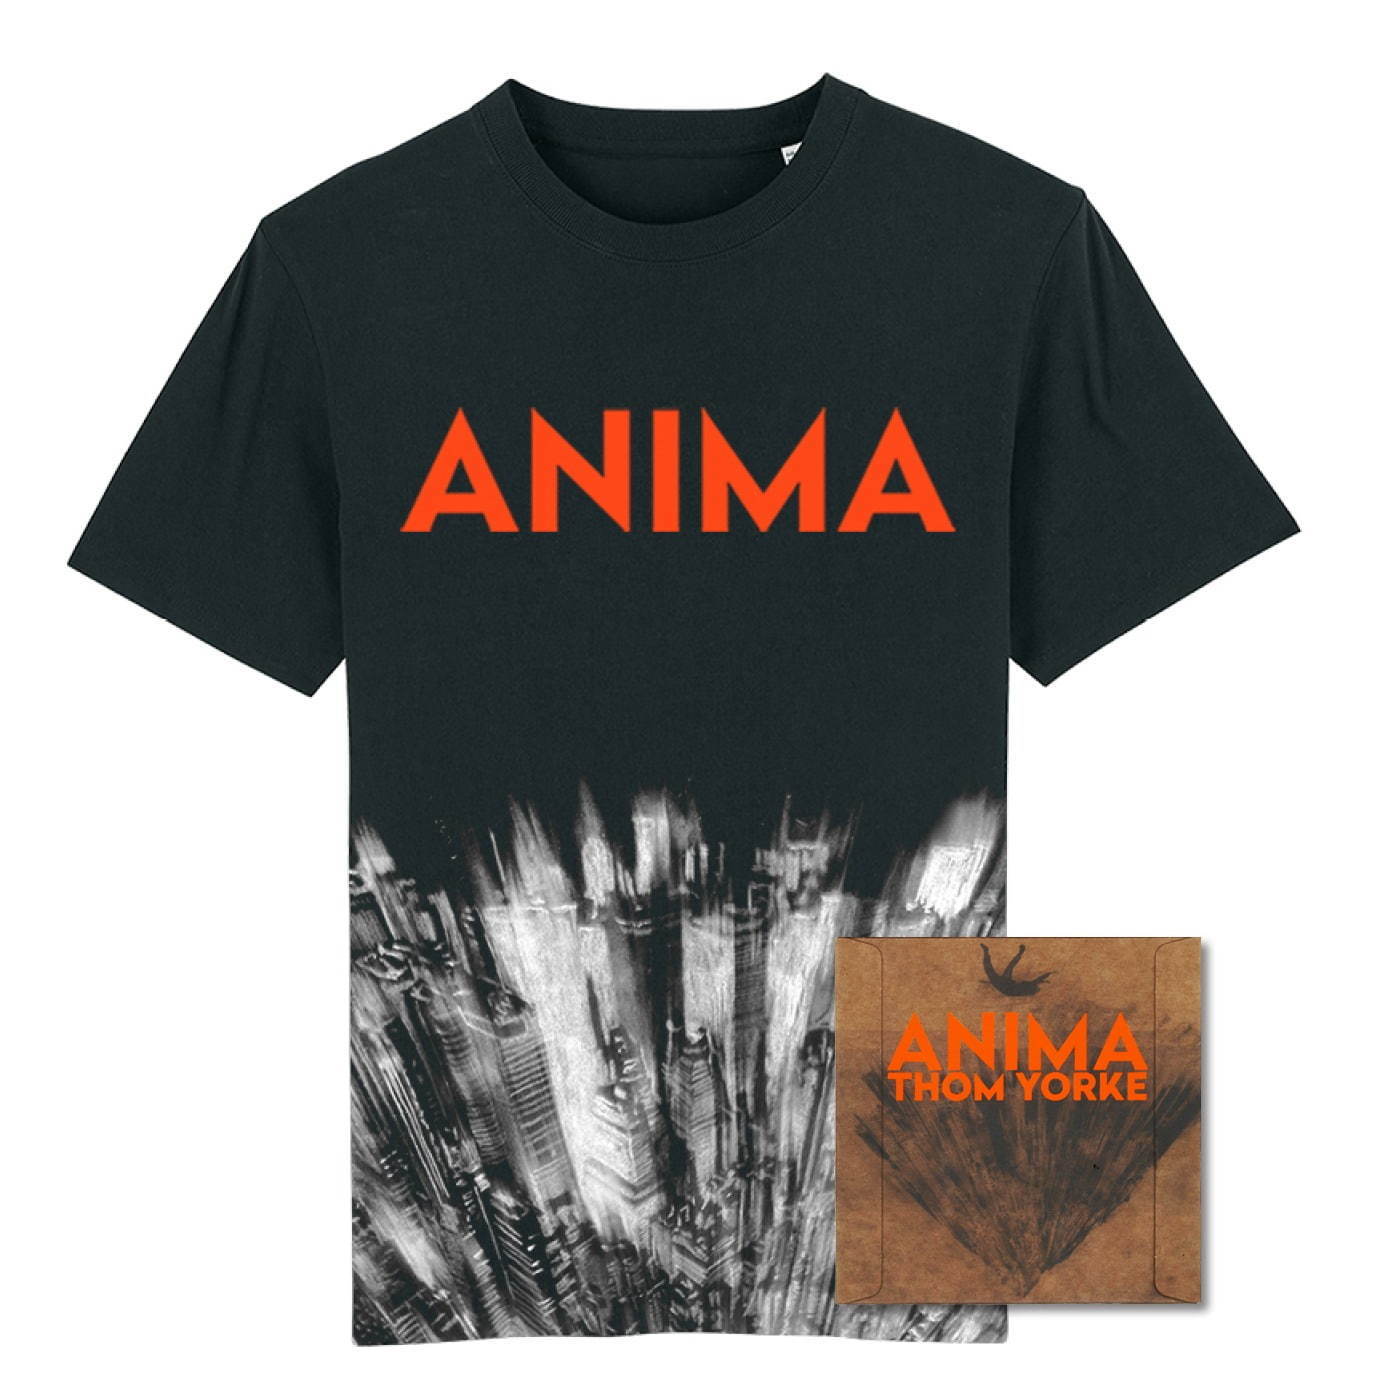 トム ヨークの新作ソロアルバム Anima P T アンダーソン監督の短編映画ともコラボレーション ファッションプレス